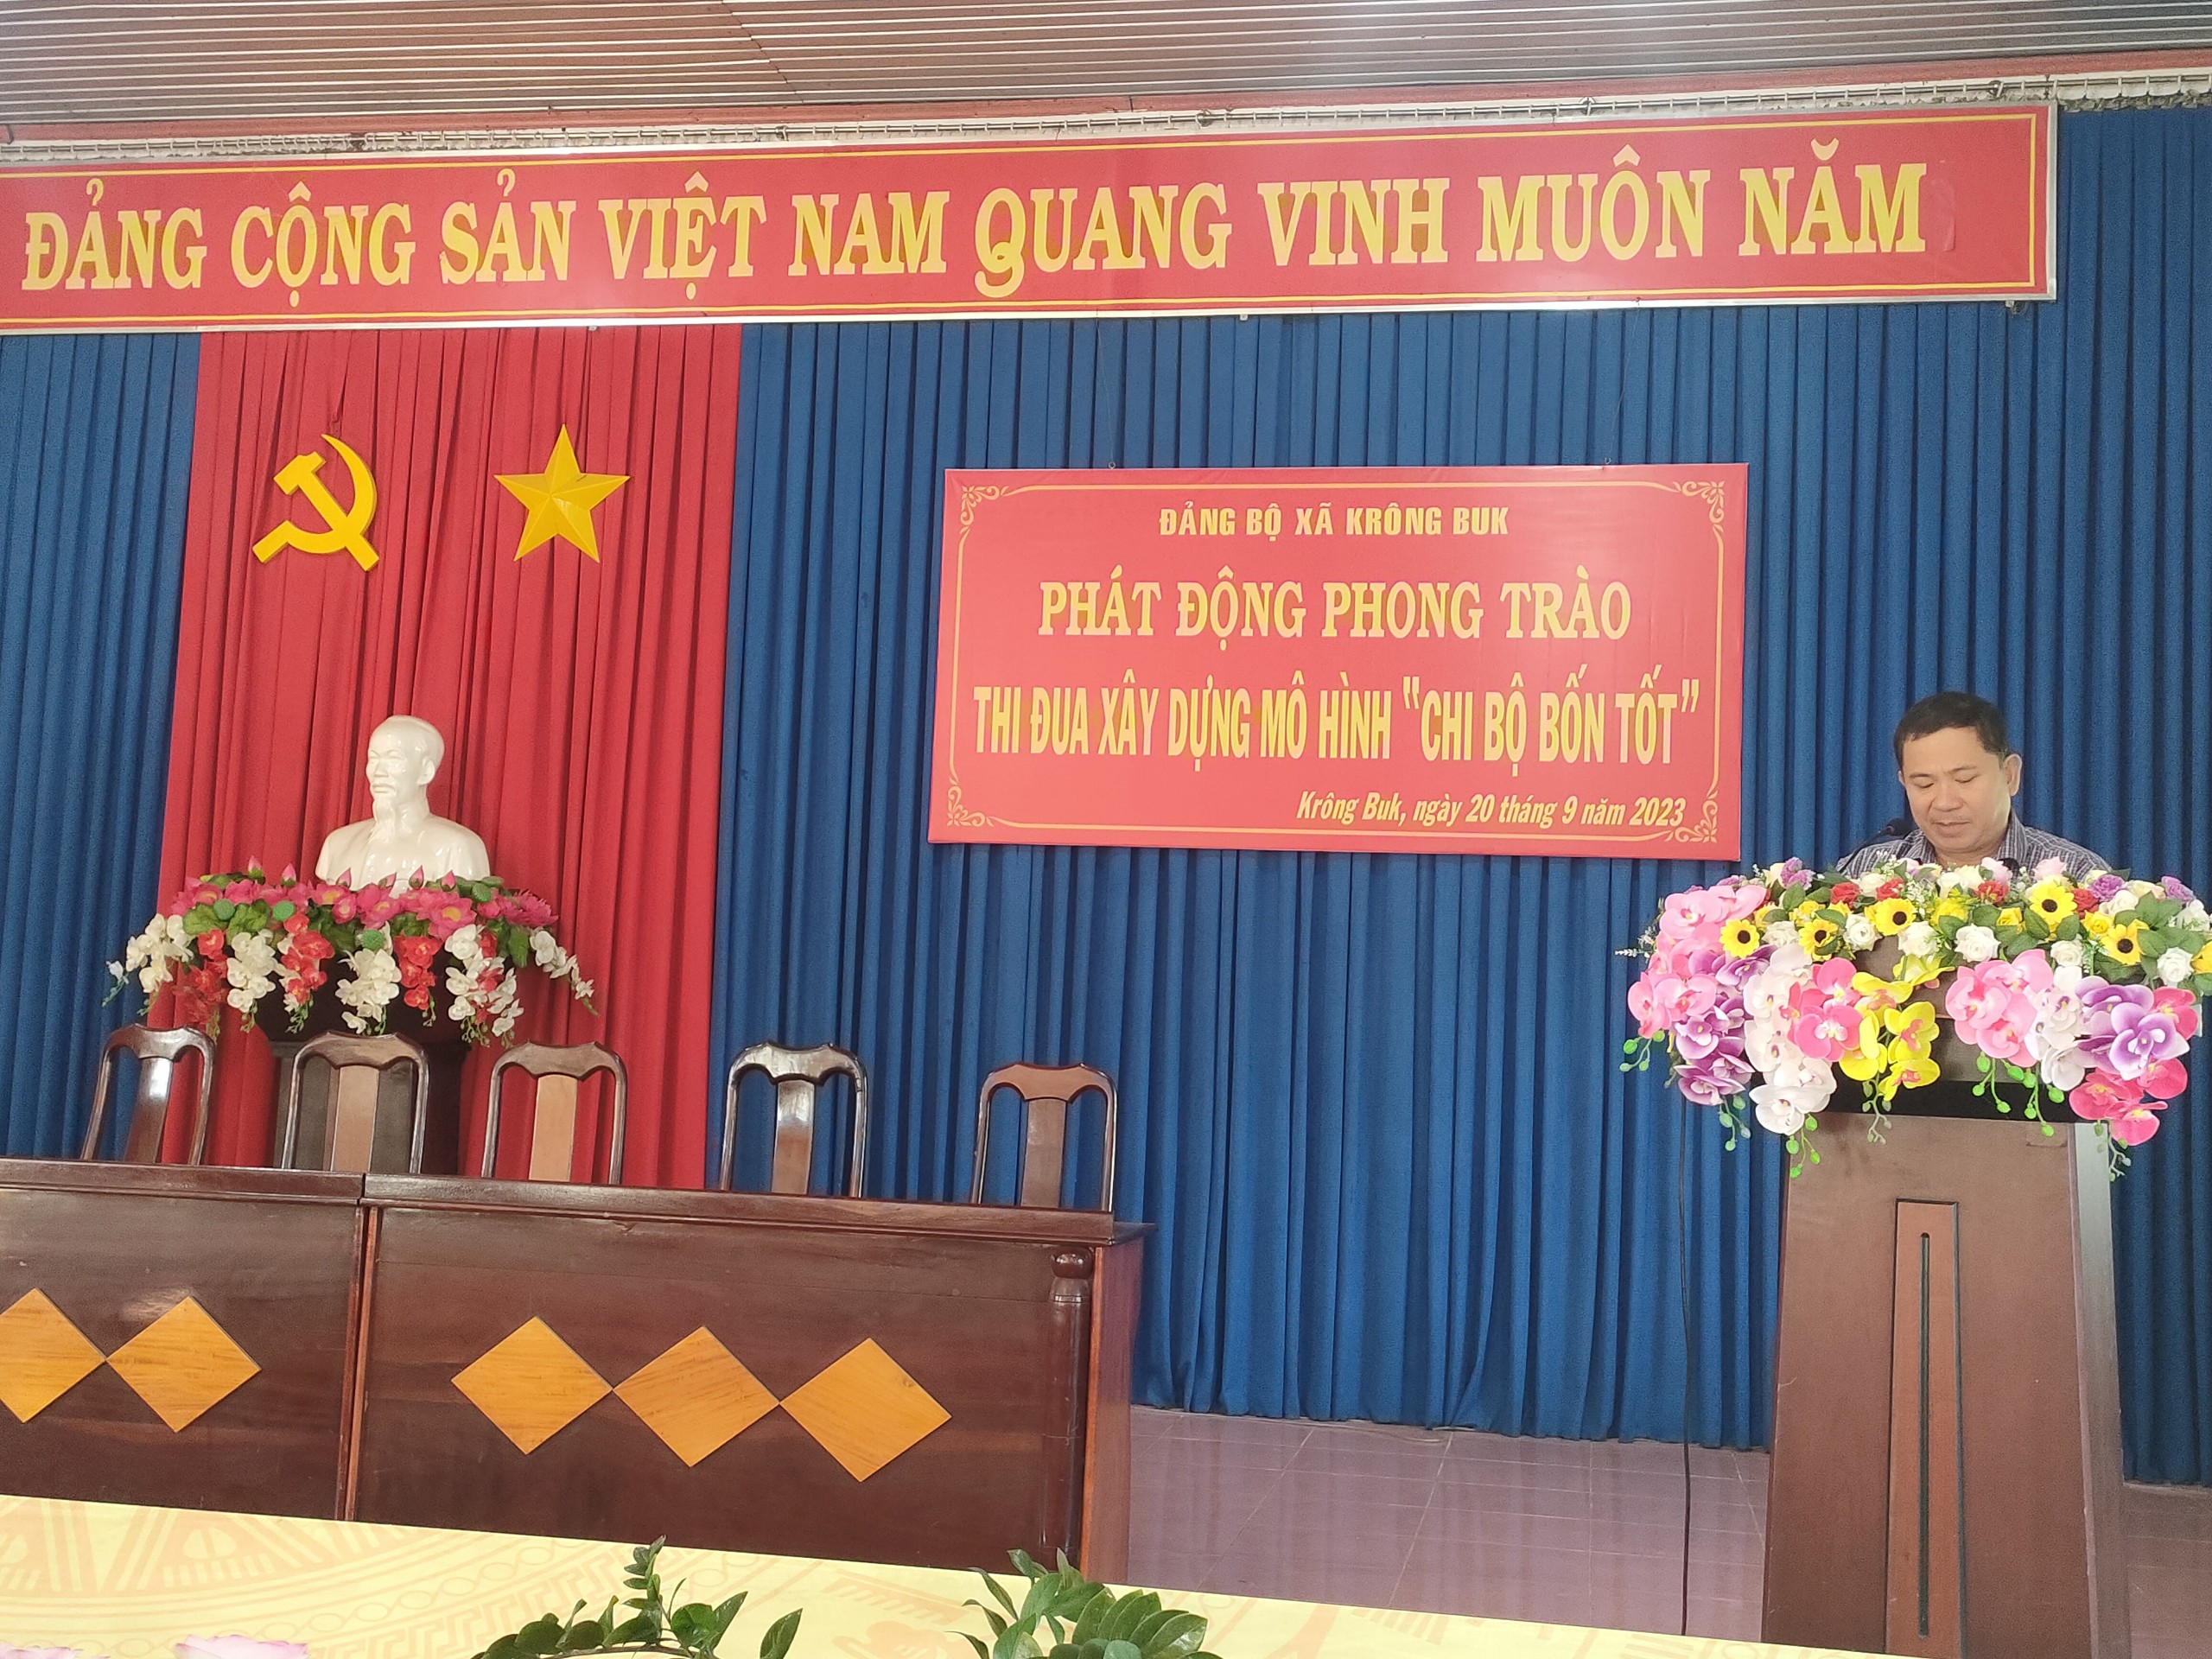 Đảng bộ xã Krông Buk tổ chức phát động phong trào thi đua xây dựng mô hình "Chi bộ bốn tốt"